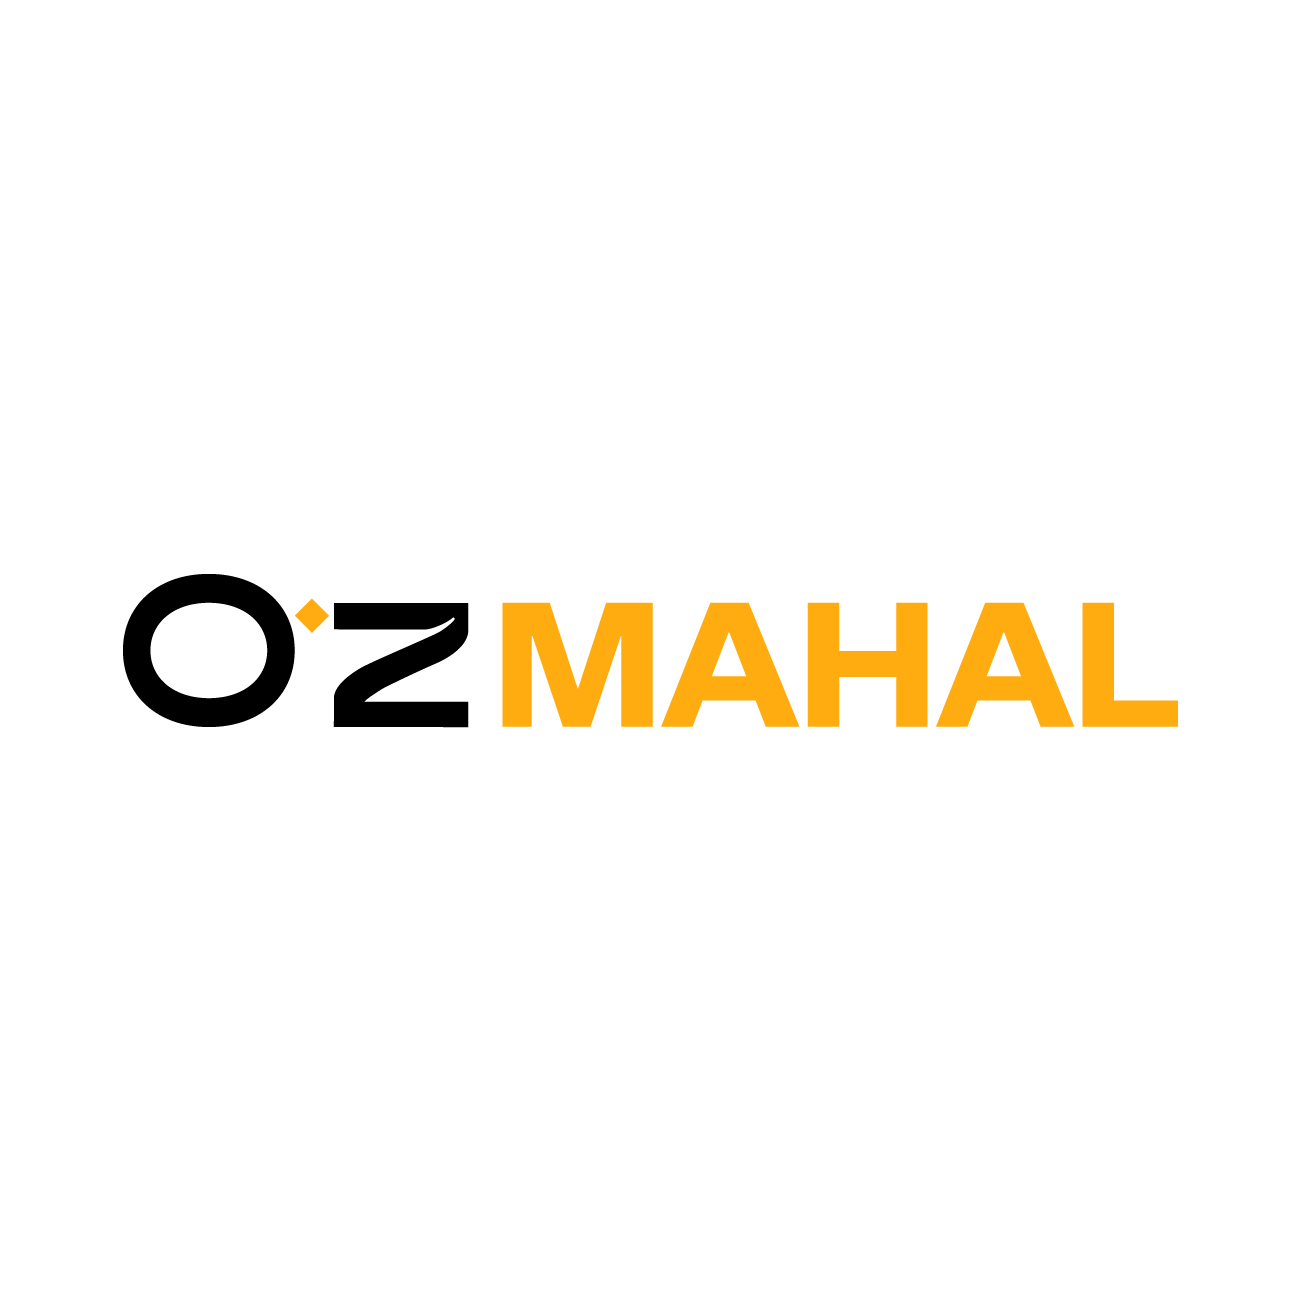 Oz Mahal